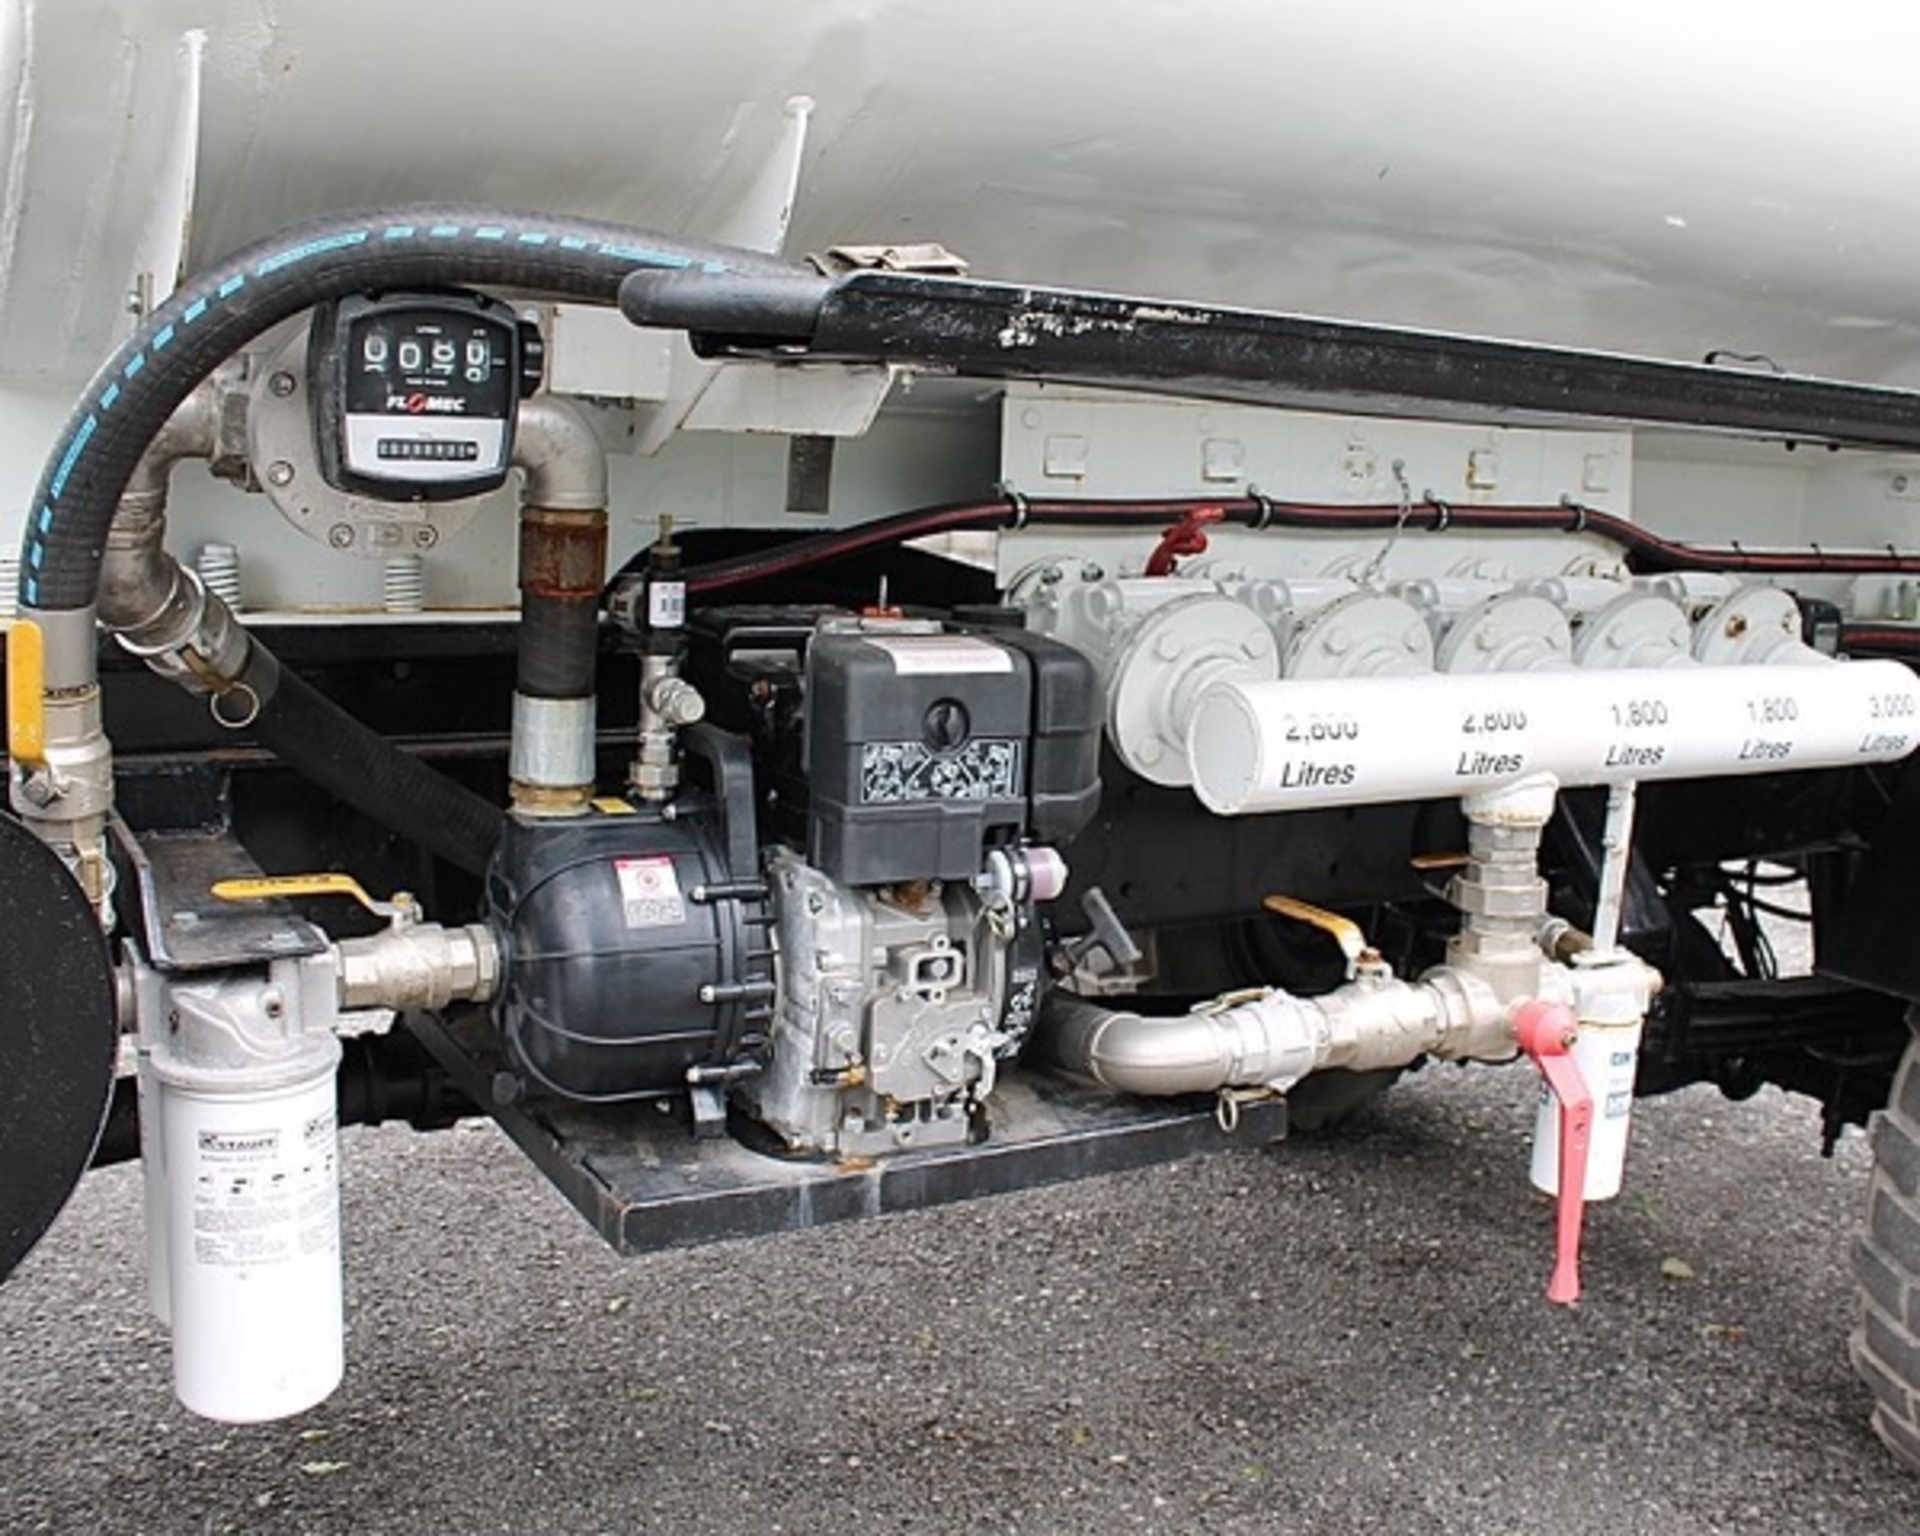 Bedford TM 12,000 litre fuel tanker
VIN: 101530
c/w MOD form 654 for registration
SKU 1486 - Image 7 of 11